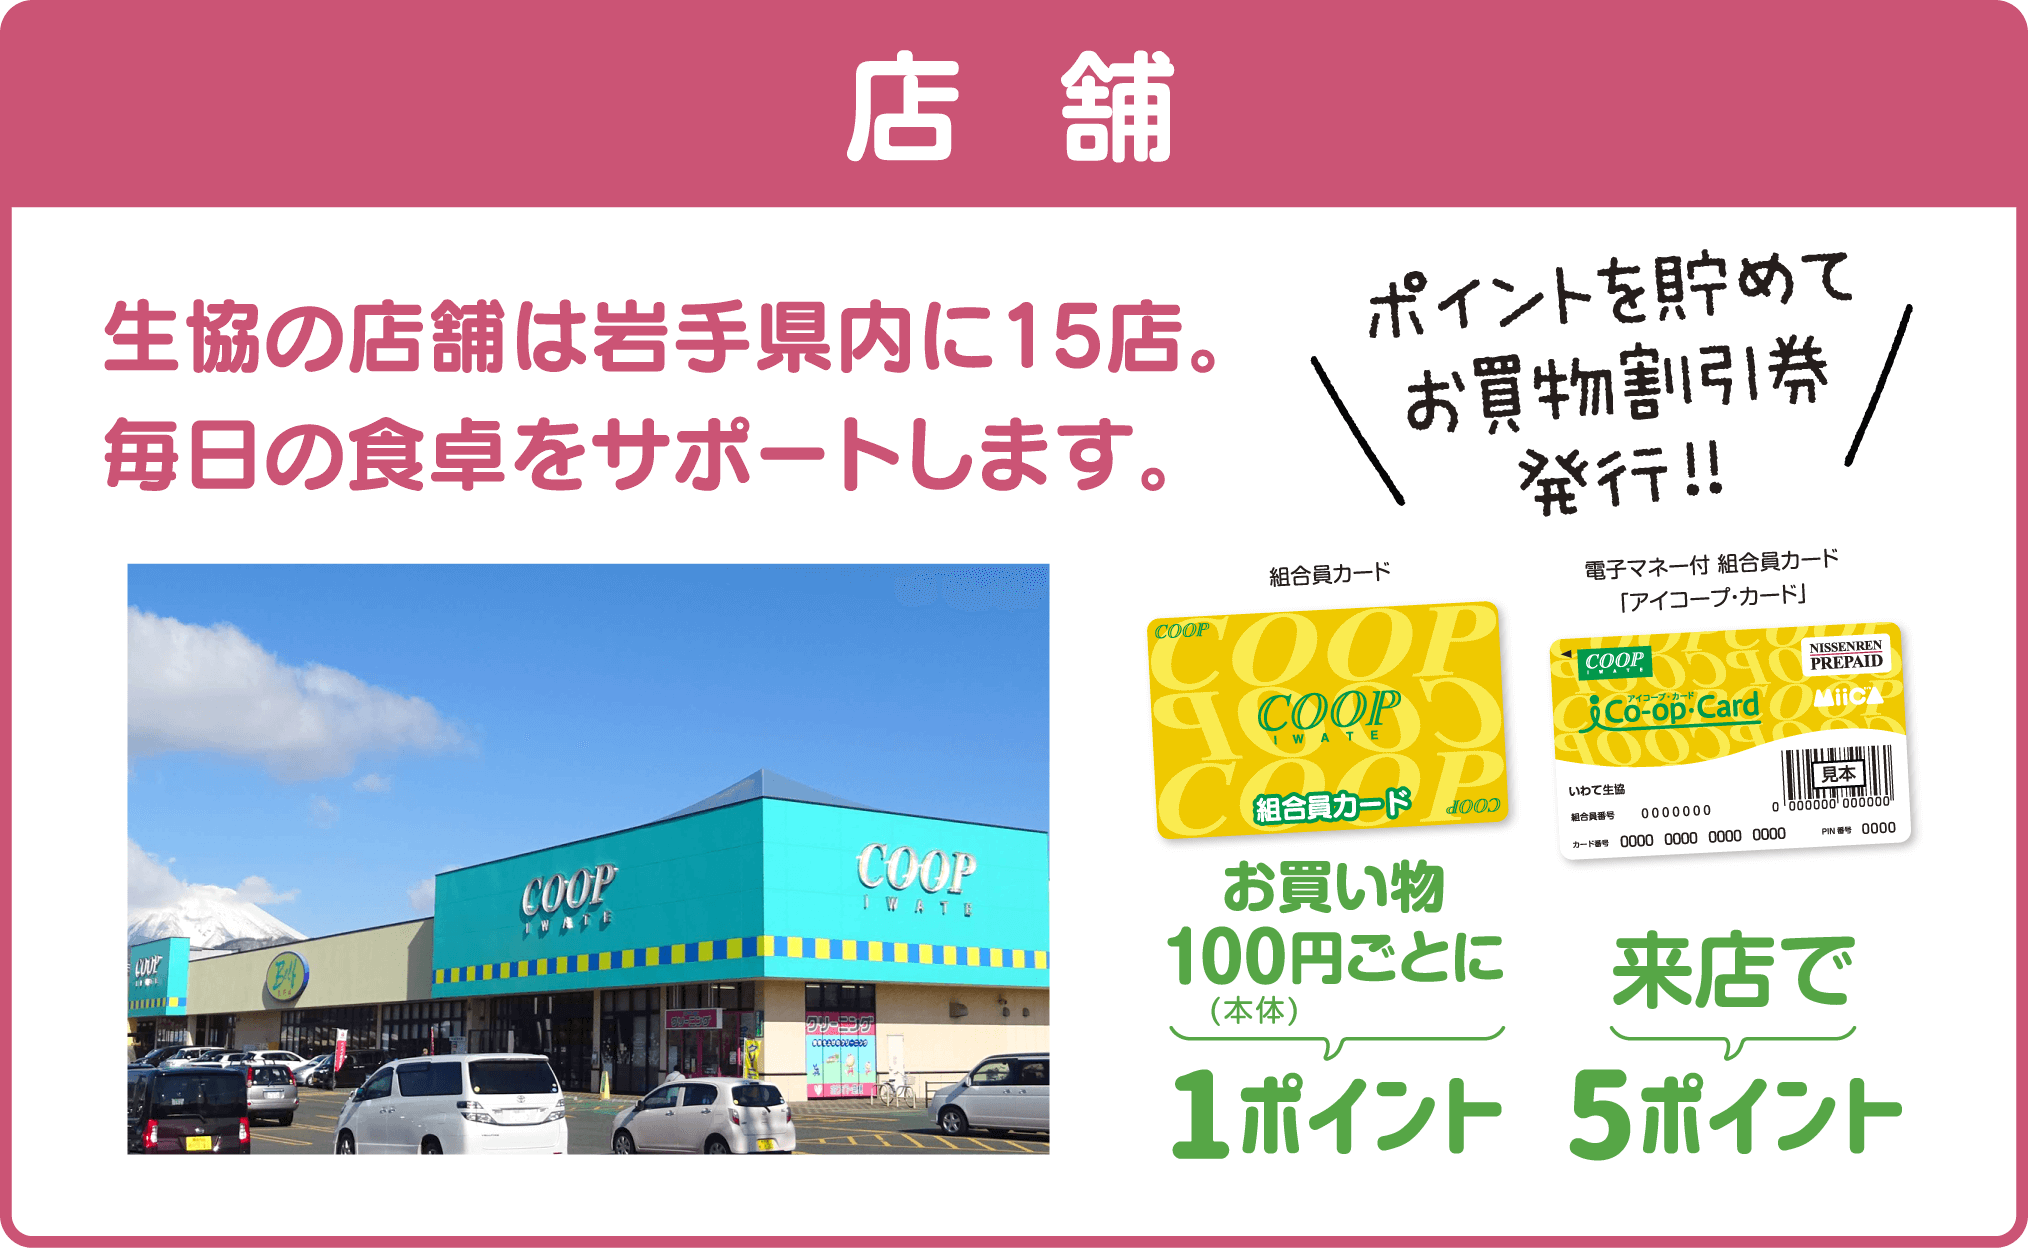 【店舗】生協の店舗は岩手県内に15店。毎日の食卓をサポートします。